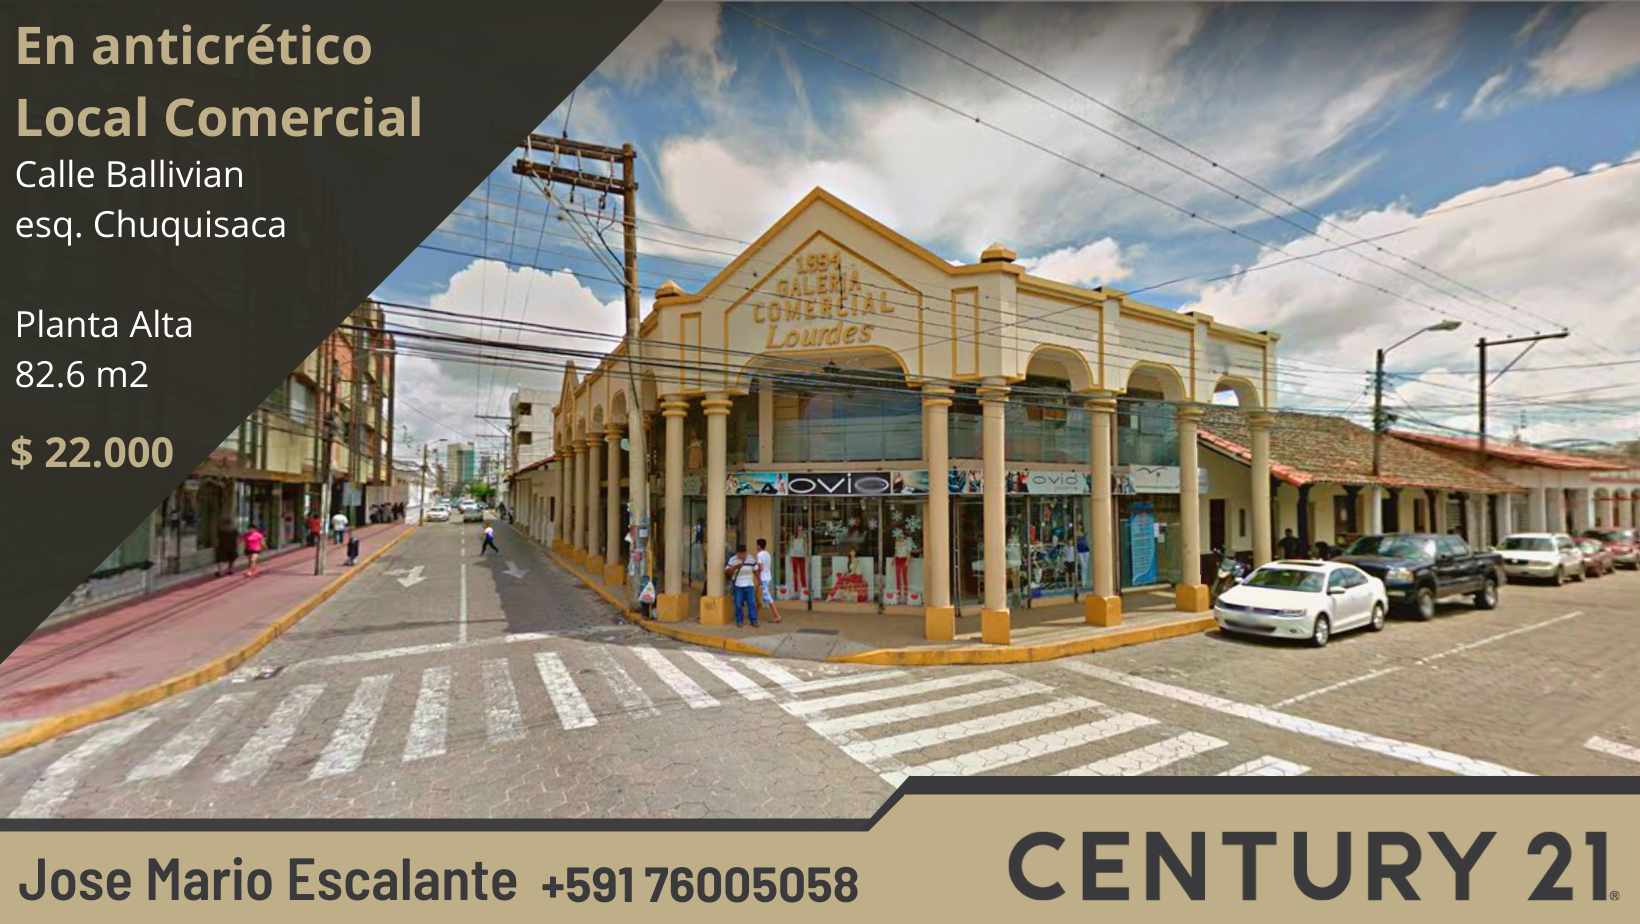 Local comercial en Anticretico Calle Ballivian esq. Chuquisaca, Planta Alta. Foto 1